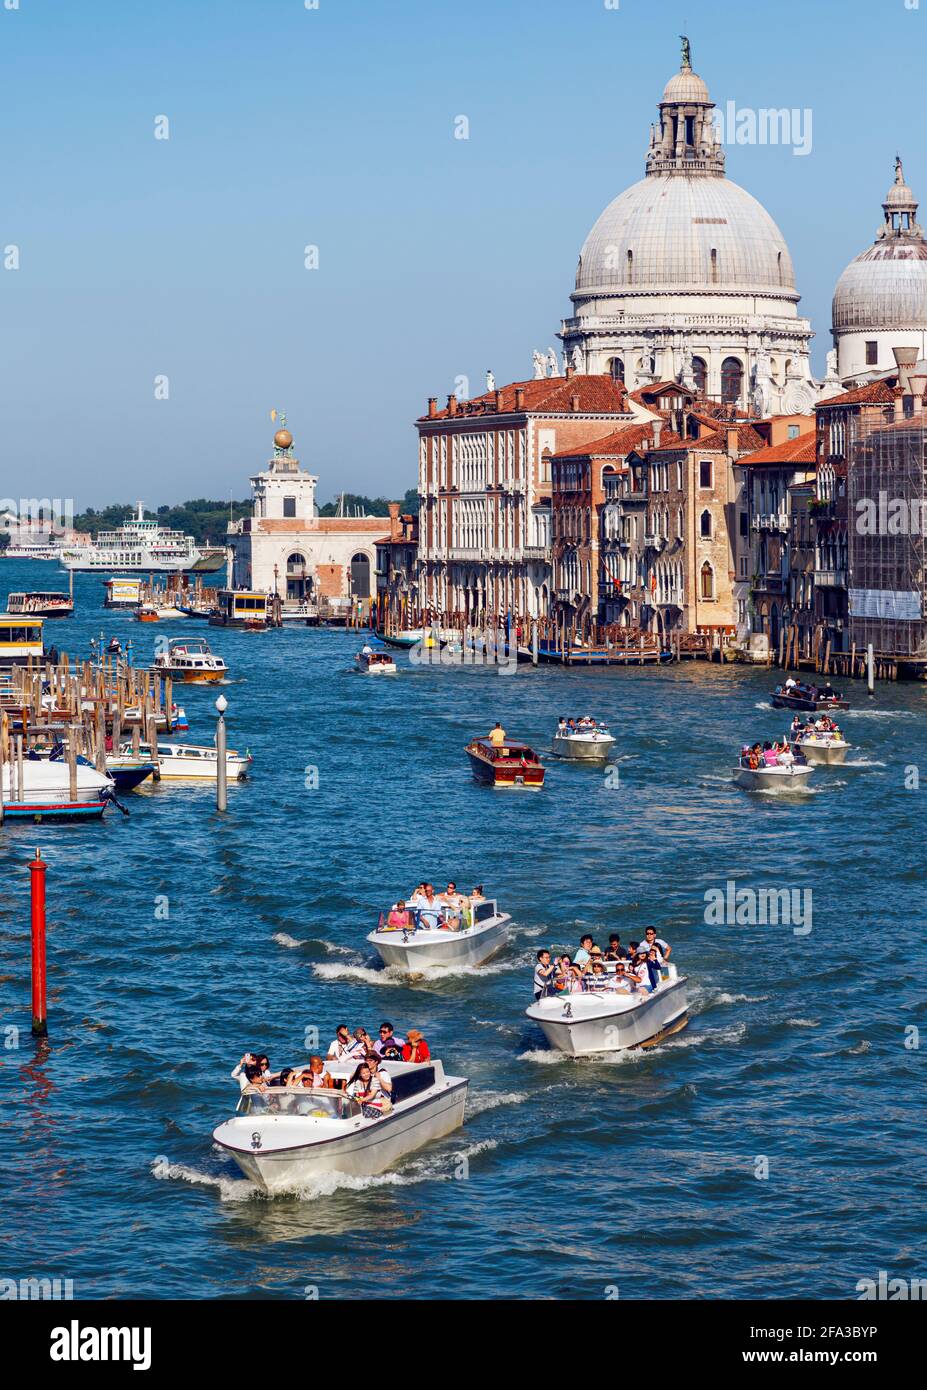 Venecia, Provincia de Venecia, Región del Véneto, Italia. Vista del Gran Canal a Santa Maria della Salute. Venecia y su laguna son Patrimonio de la Humanidad de la UNESCO Foto de stock